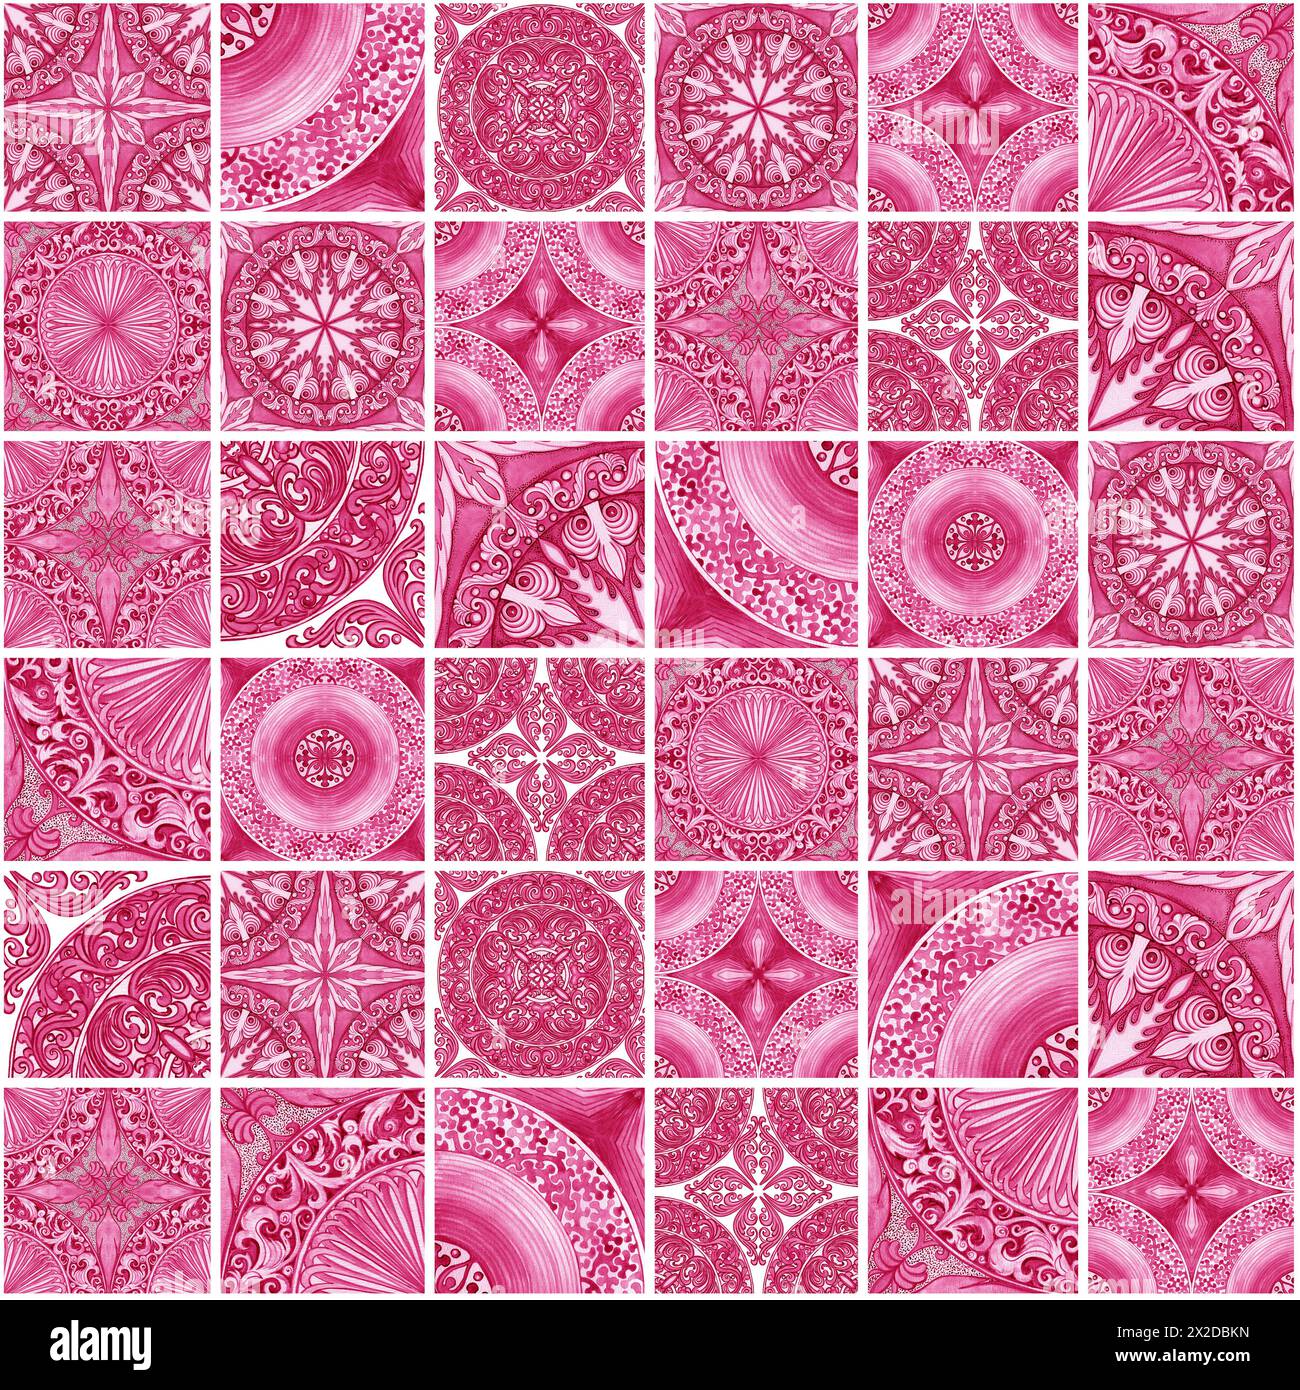 Gestaltung von Keramikfliesen in rosa Tönen. Sizilianisches nahtloses Muster. Aquarellhintergrund im Barockstil. Handgefertigte königliche Dekoration. Italien Im Mittelmeerraum Stockfoto